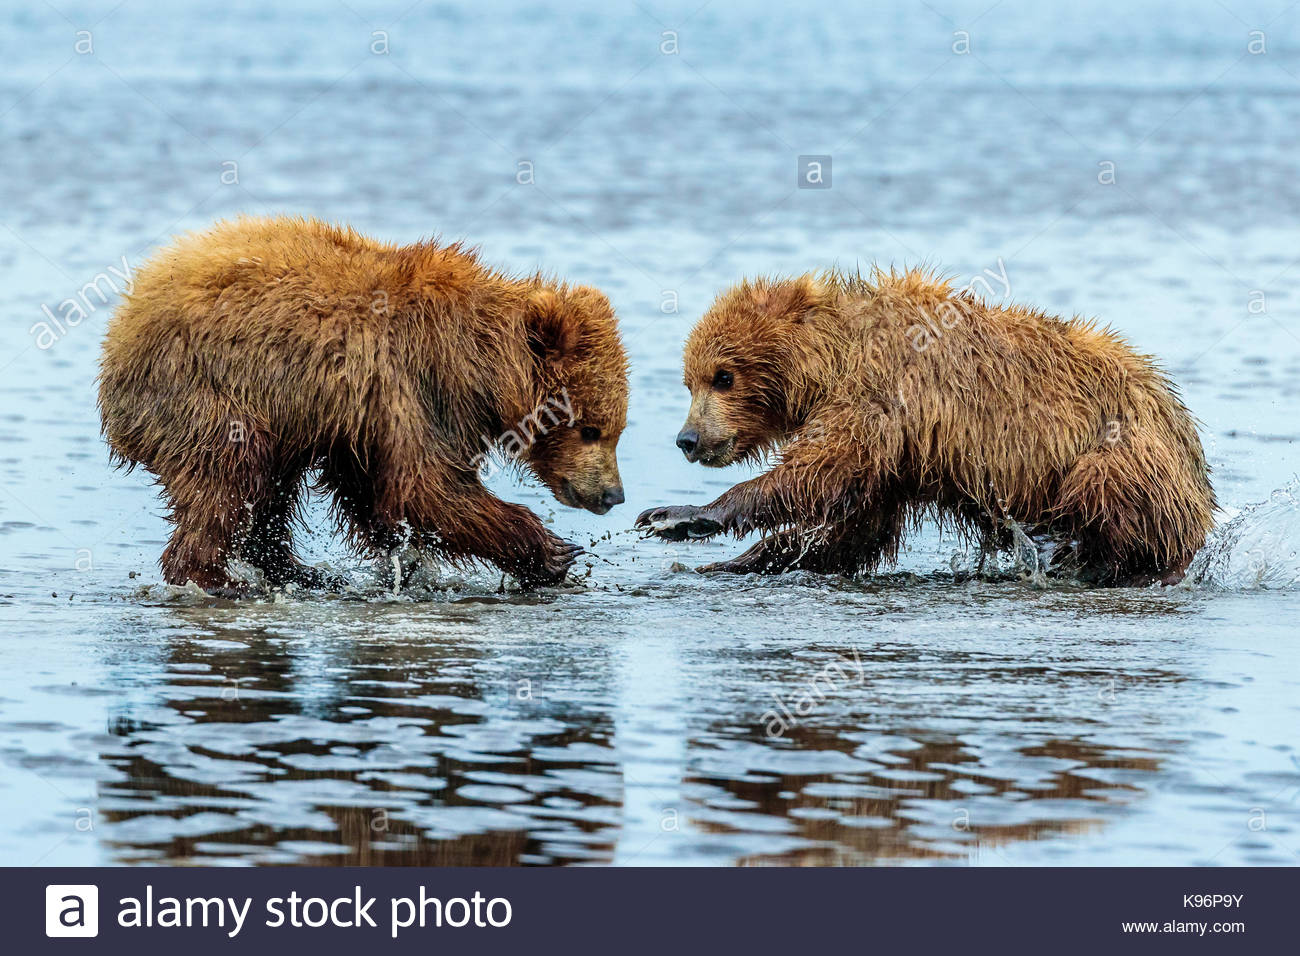 L'ours brun côtières, Ursus arctos, creuser et les palourdes à Sliver Salmon Creek dans la région de Lake Clark National Park, Alaska. Banque D'Images